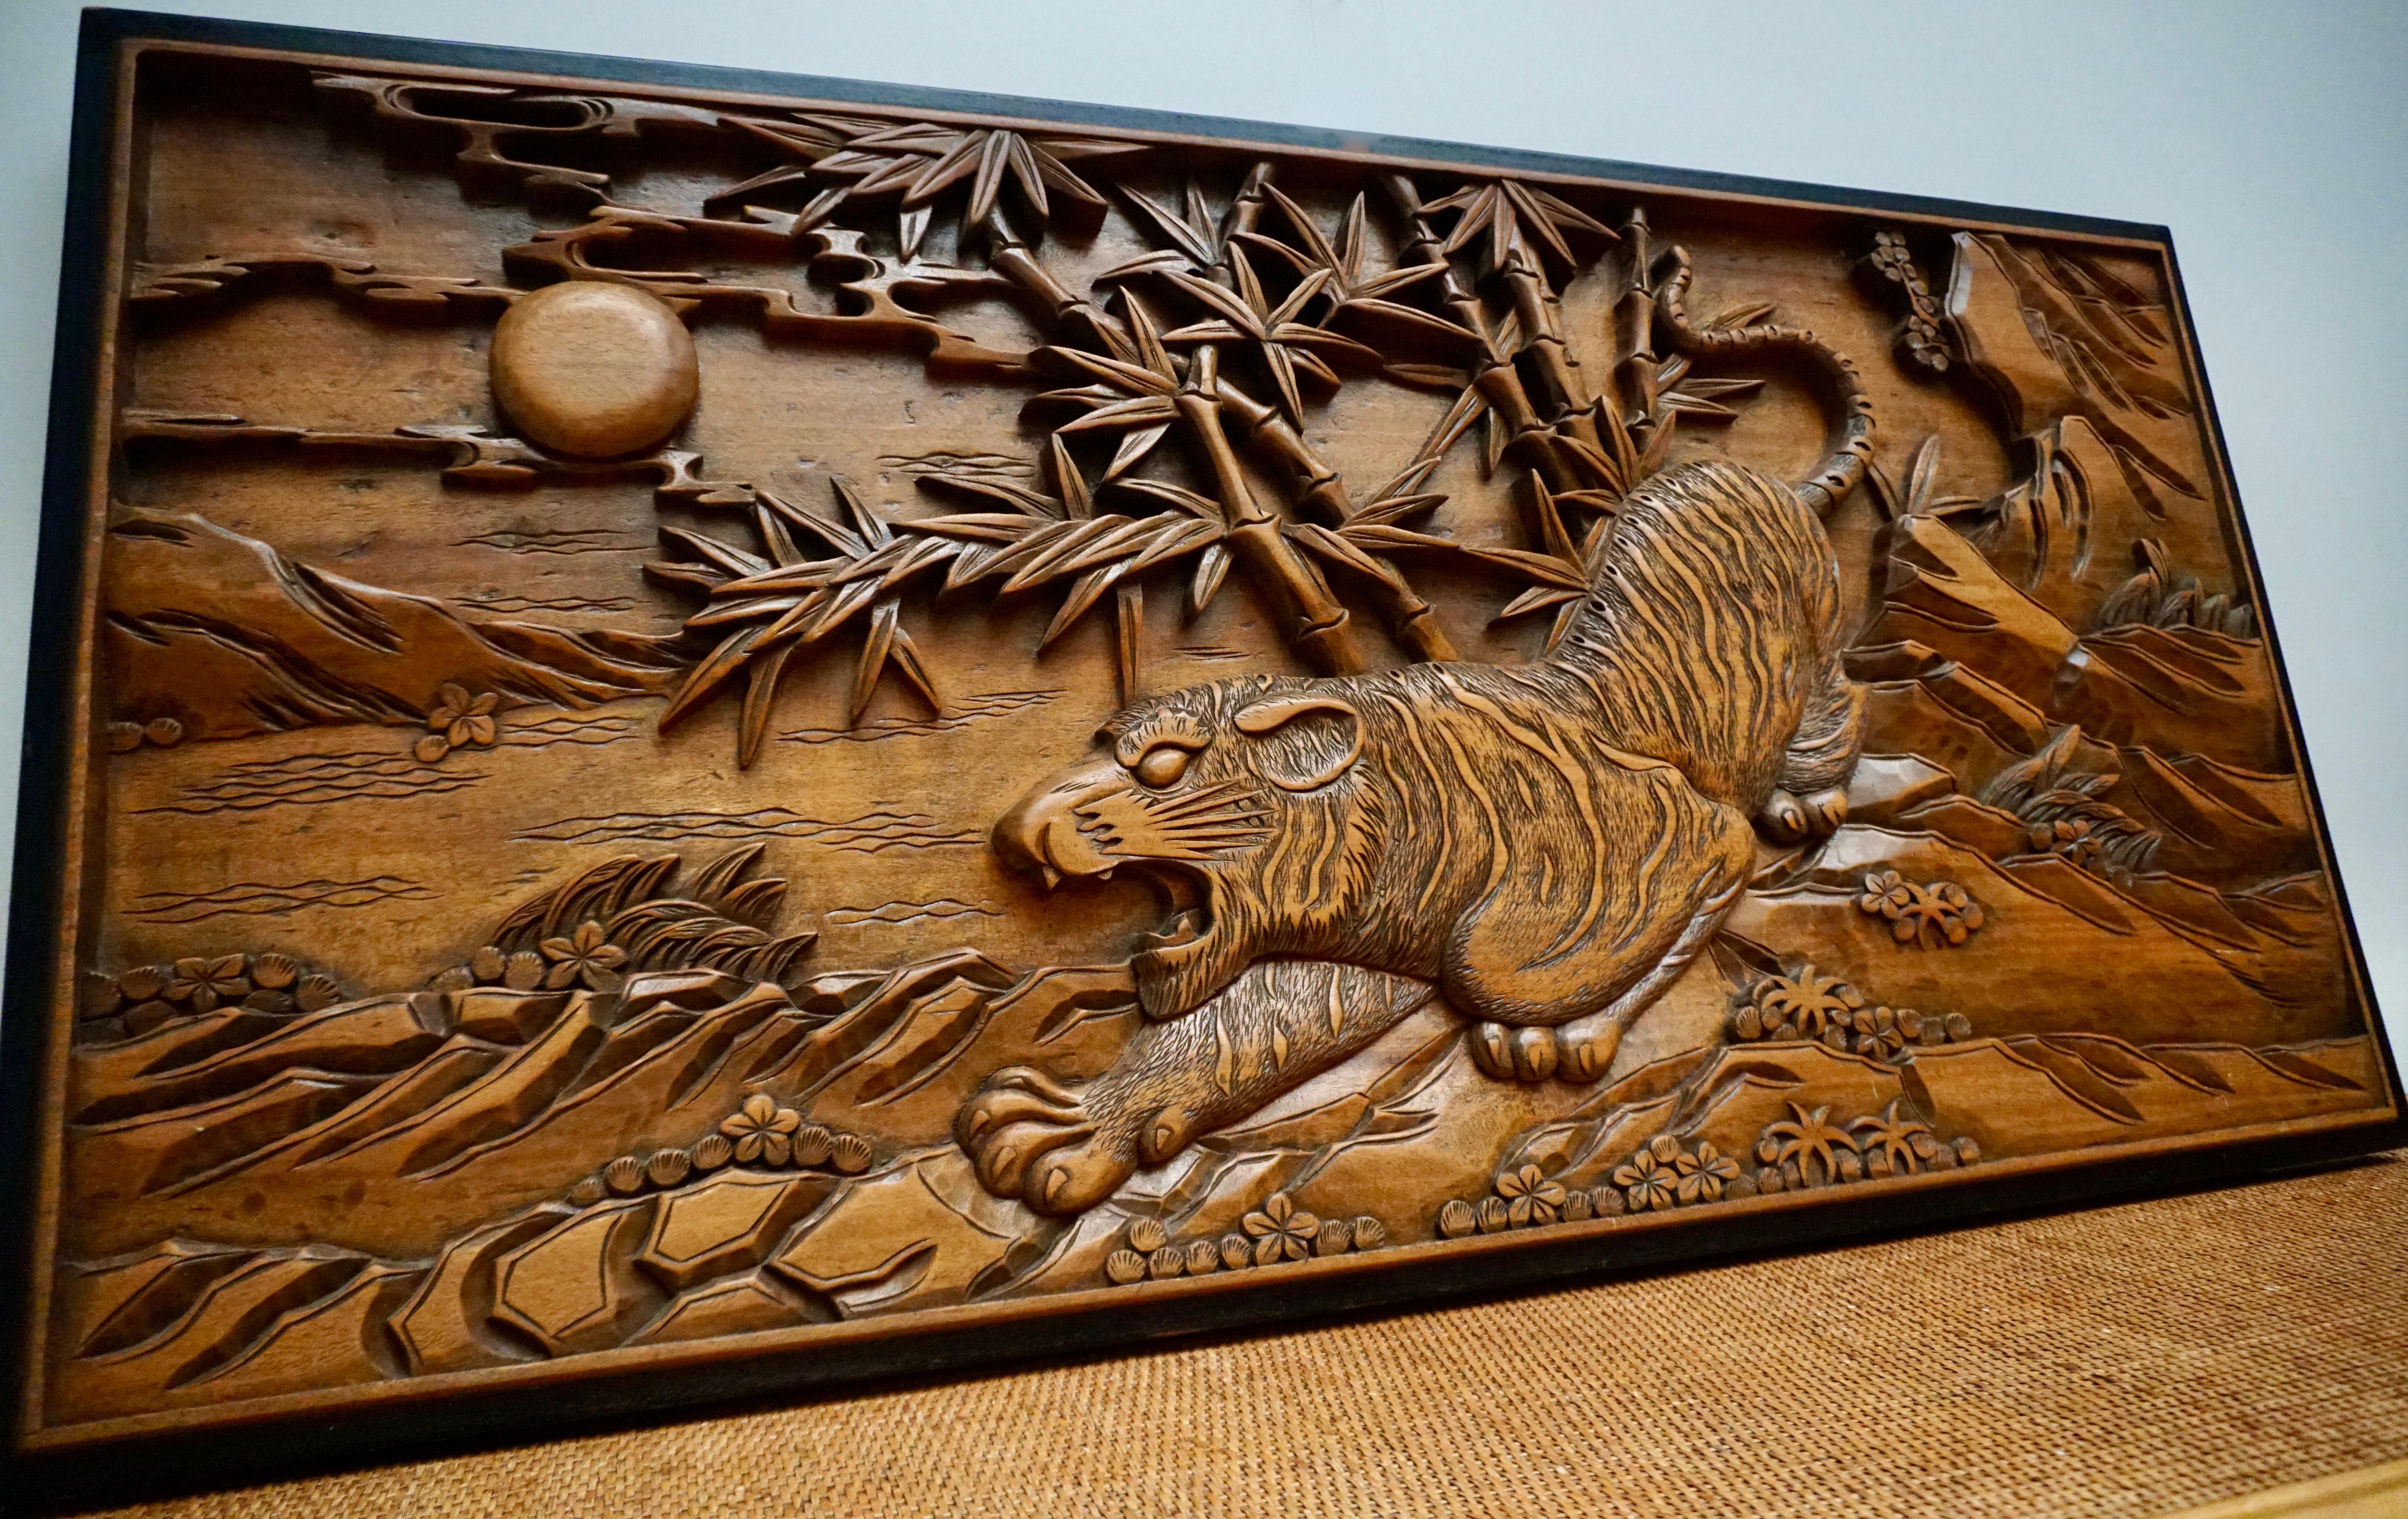 Une grande plaque murale chinoise du XIXe siècle en bois sculpté représente un tigre en chasse sur des rochers avec des bambous et le soleil en arrière-plan.
Cette plaque murale en bois chinois du 20e siècle, sculptée à la main, apporterait un